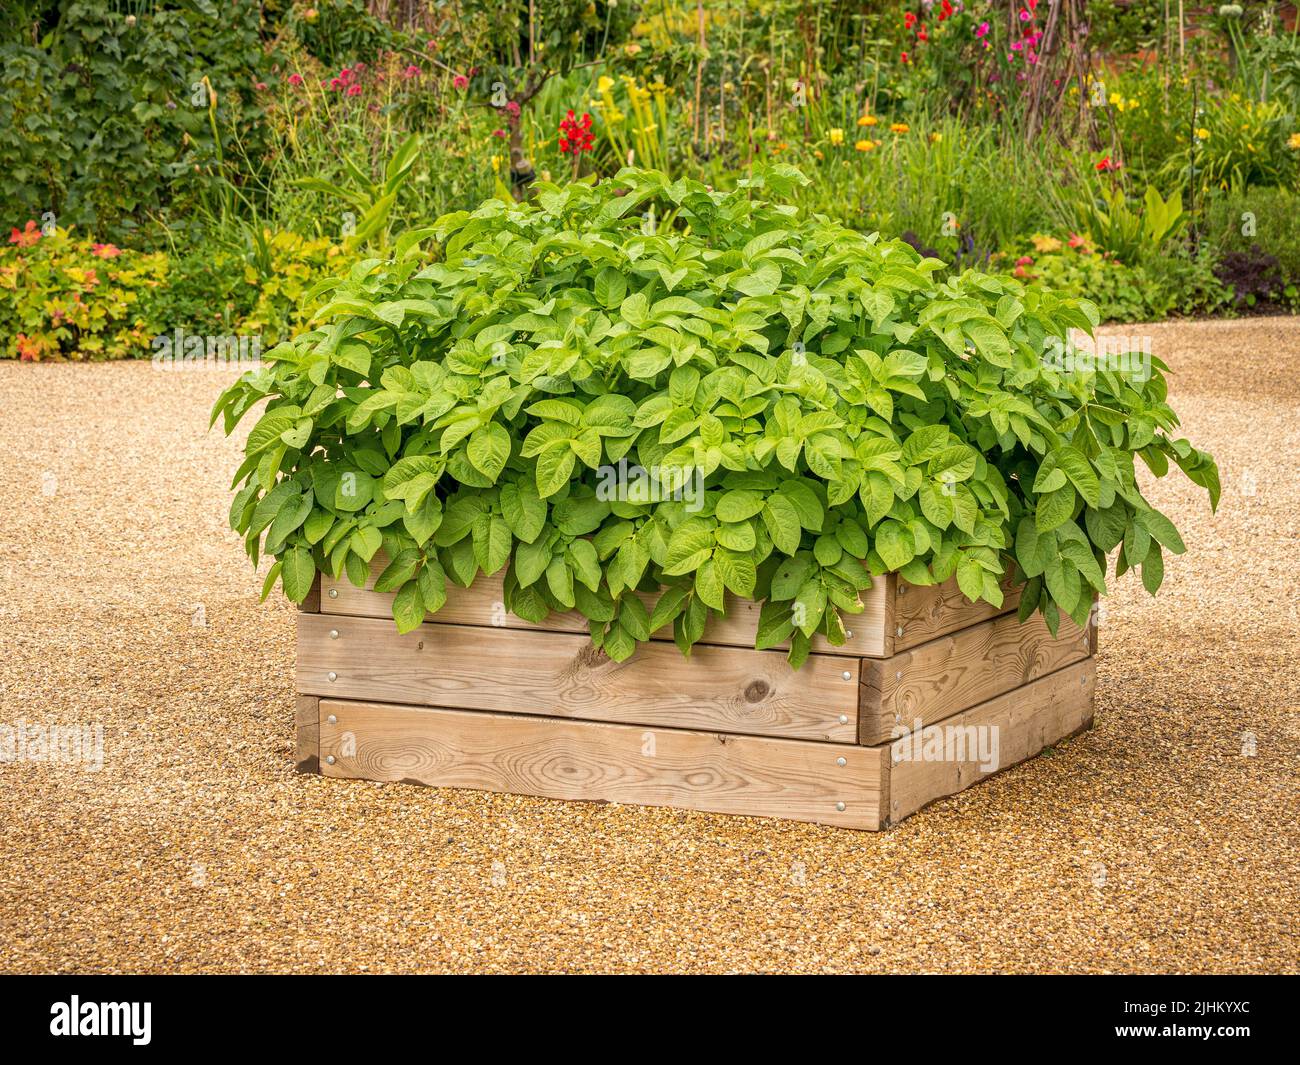 Pommes de terre poussant dans un récipient en bois sur une terrasse en gravier dans un jardin britannique. Banque D'Images